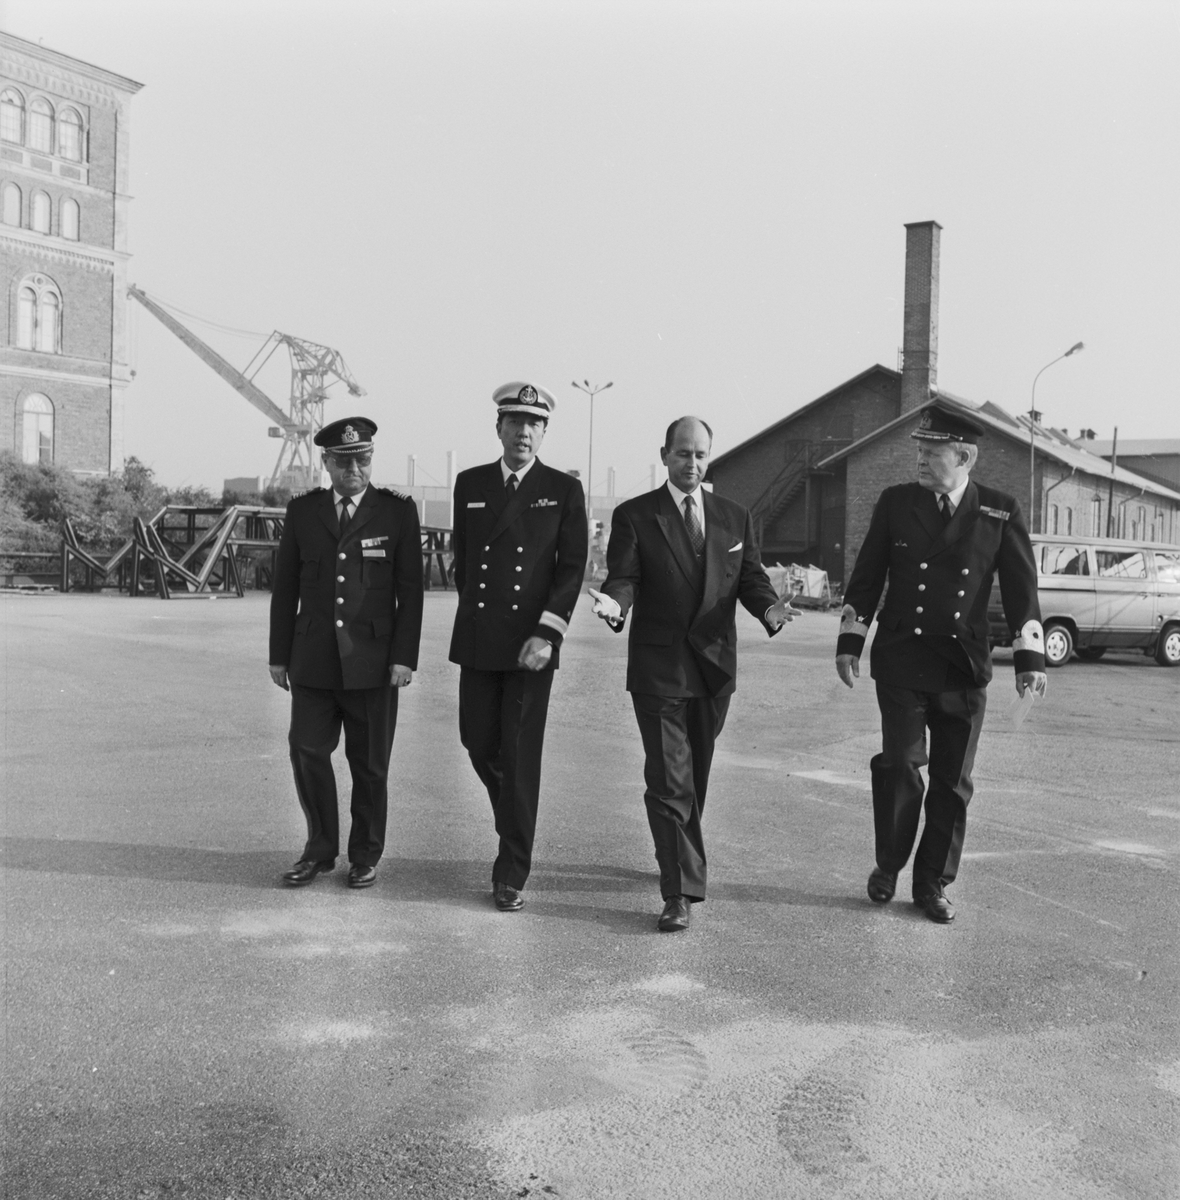 Varvschefen tar en promenad med den singaporianske marinchefen och två höga sjöofficerare.